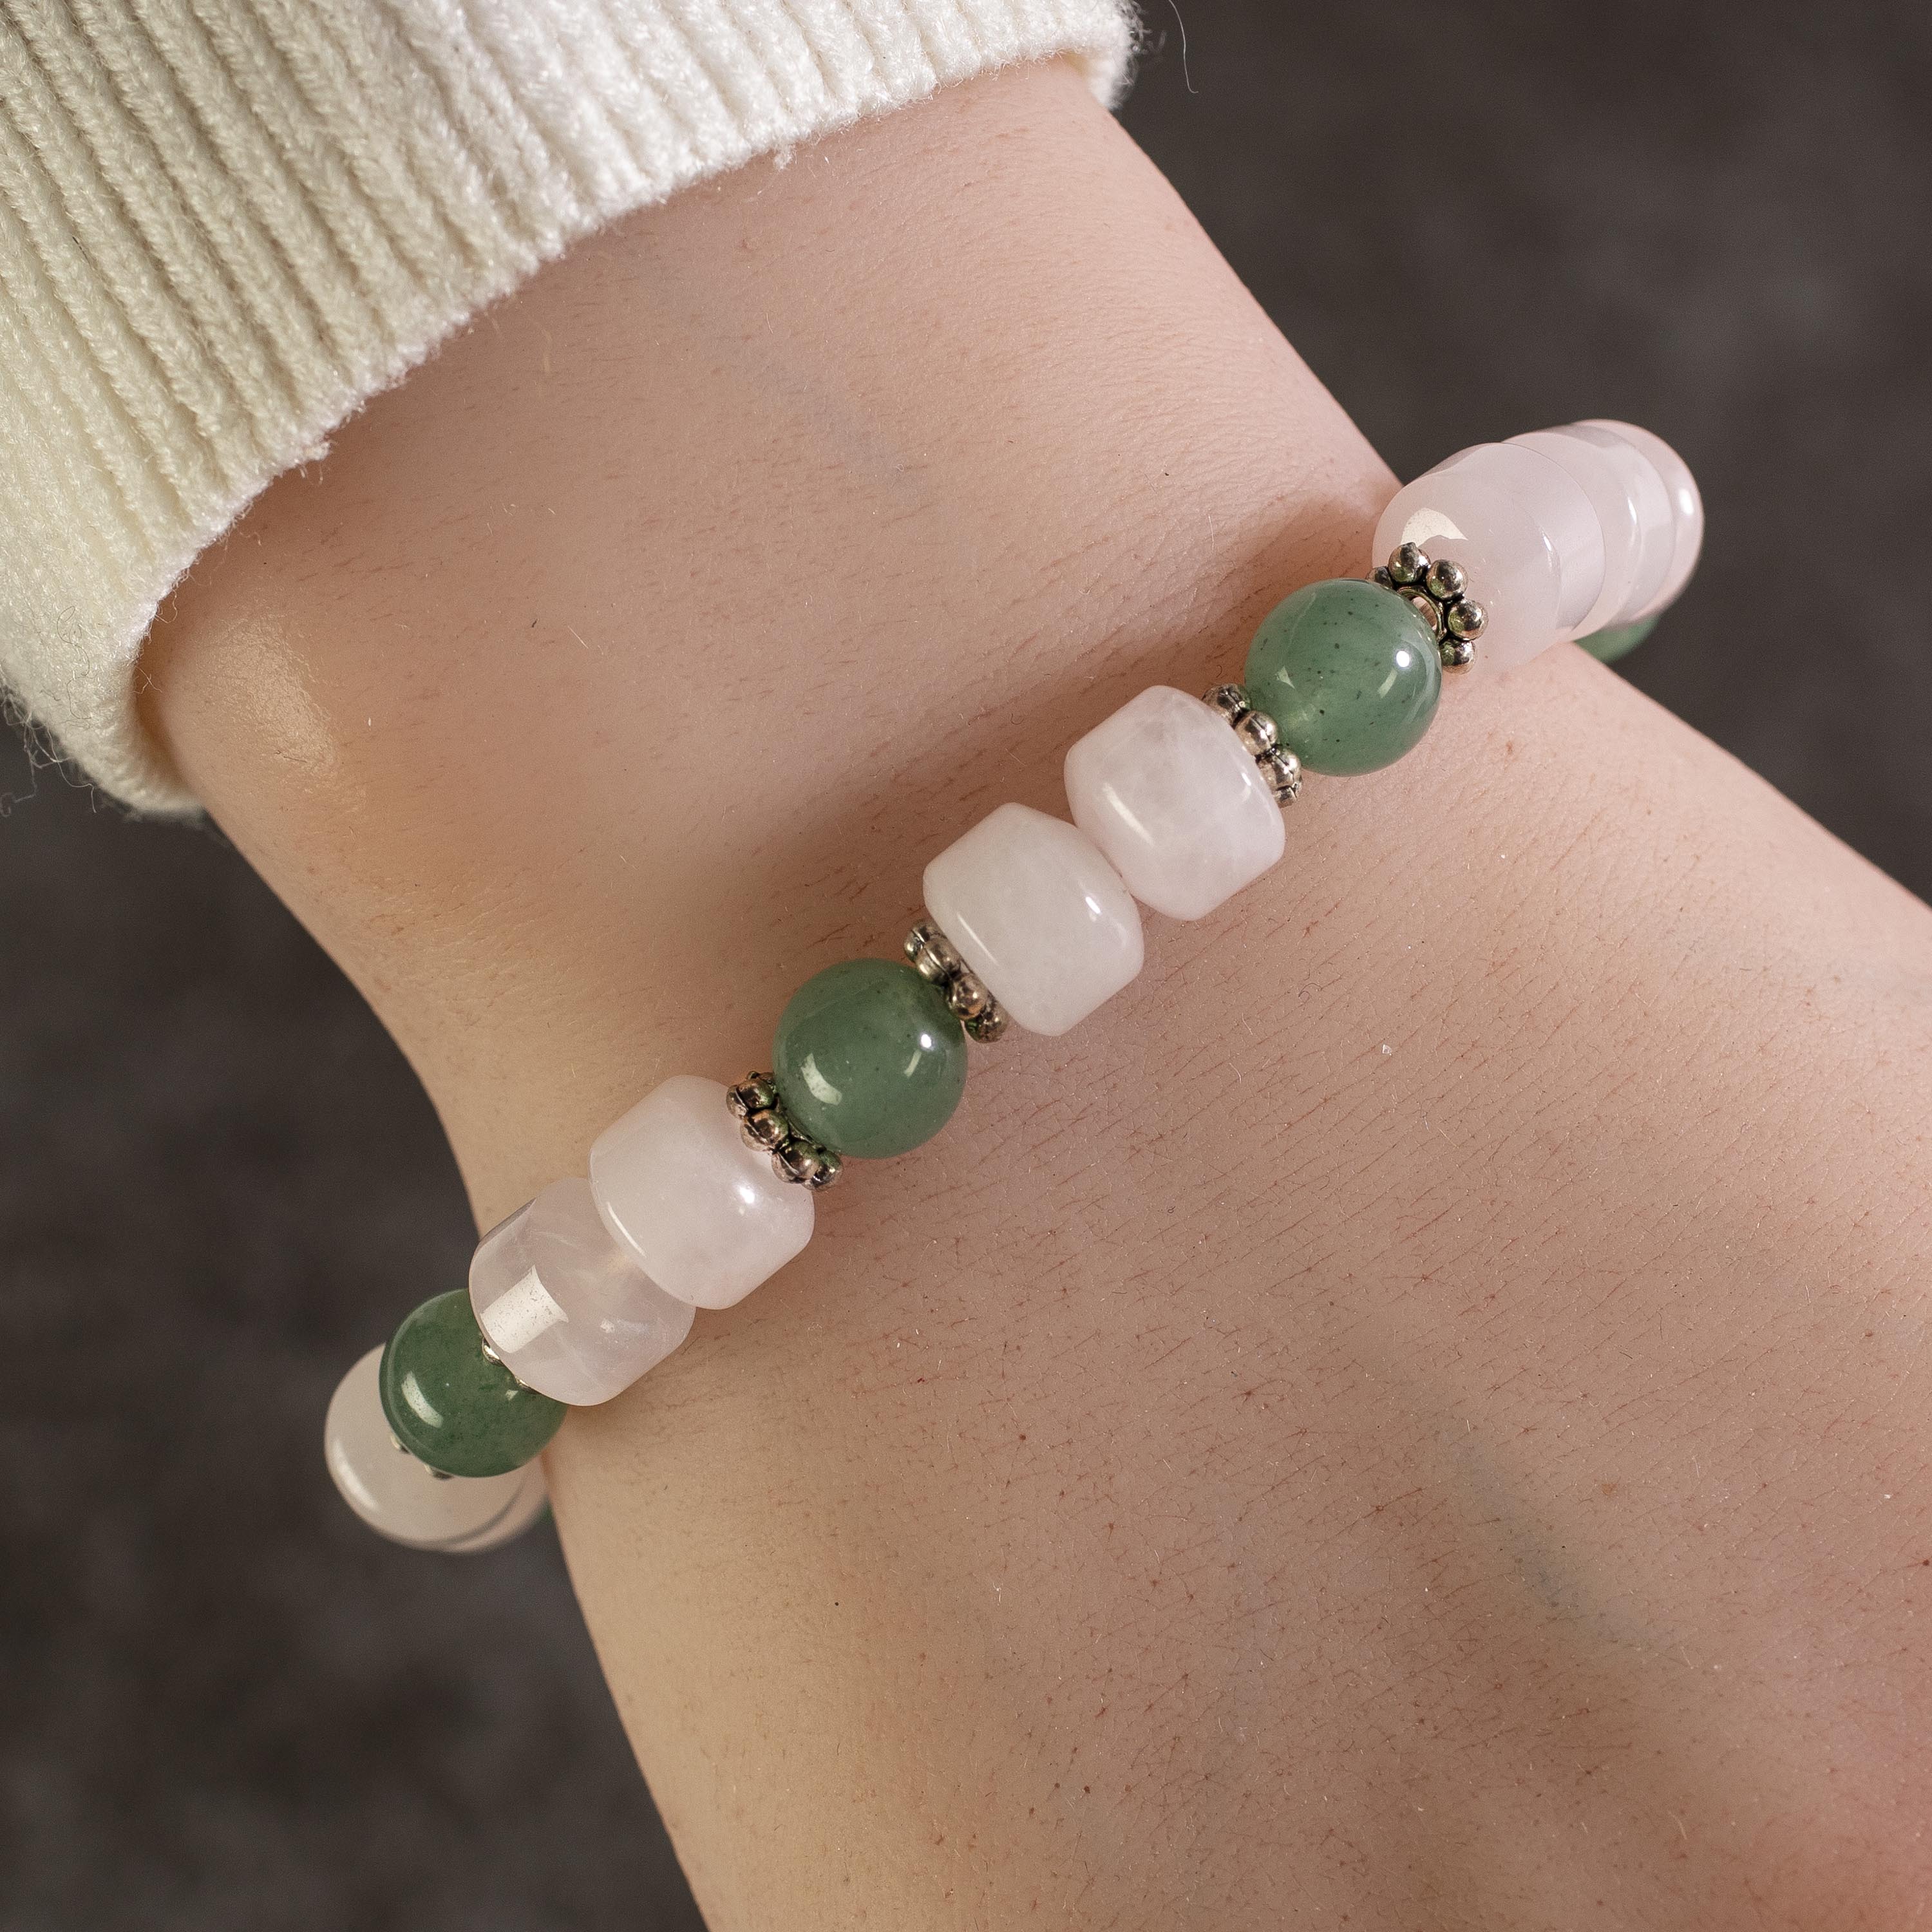 Kalifano Gemstone Bracelets Rose Quartz and Aventurine Gemstone Elastic Bracelet with Crystal Accent Beads WHITE-BGP-010